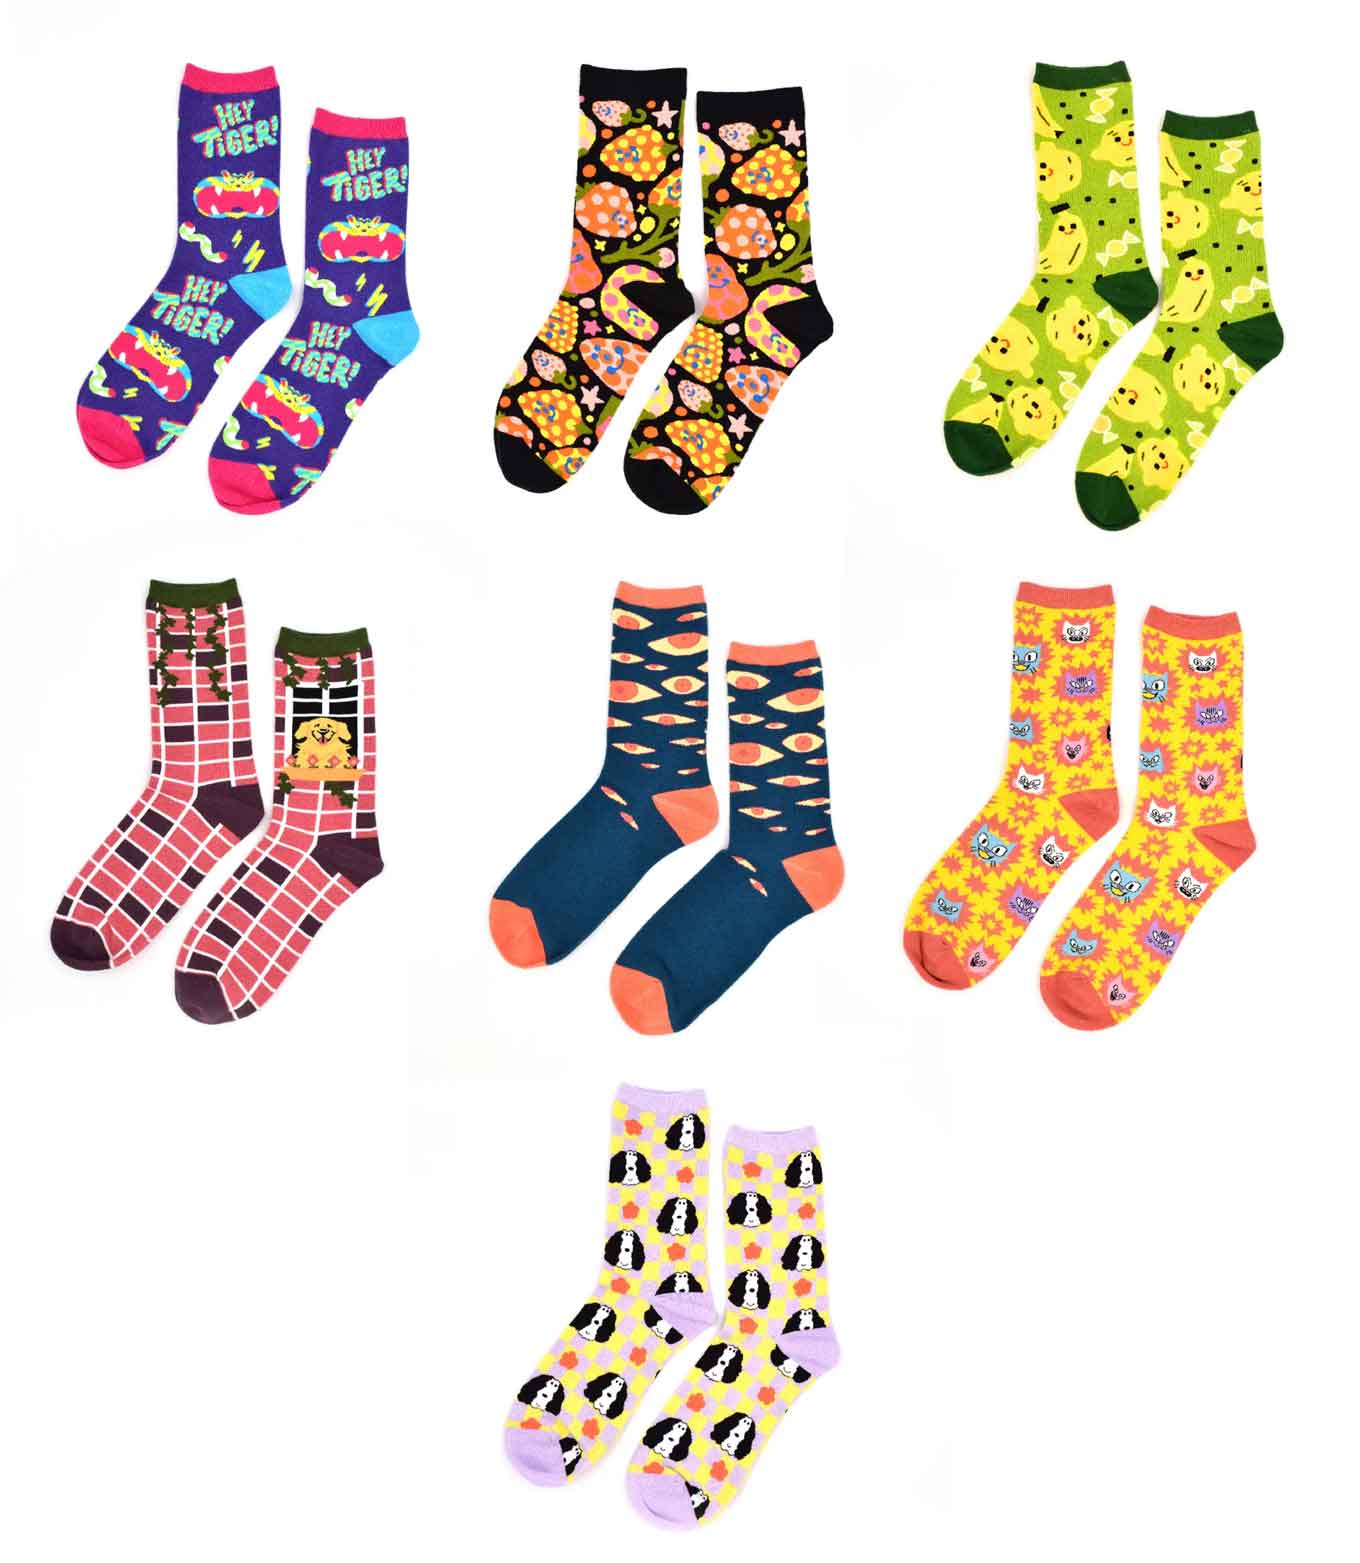 Voorbeelden van kleurrijke sokken van Awesome Socks Club